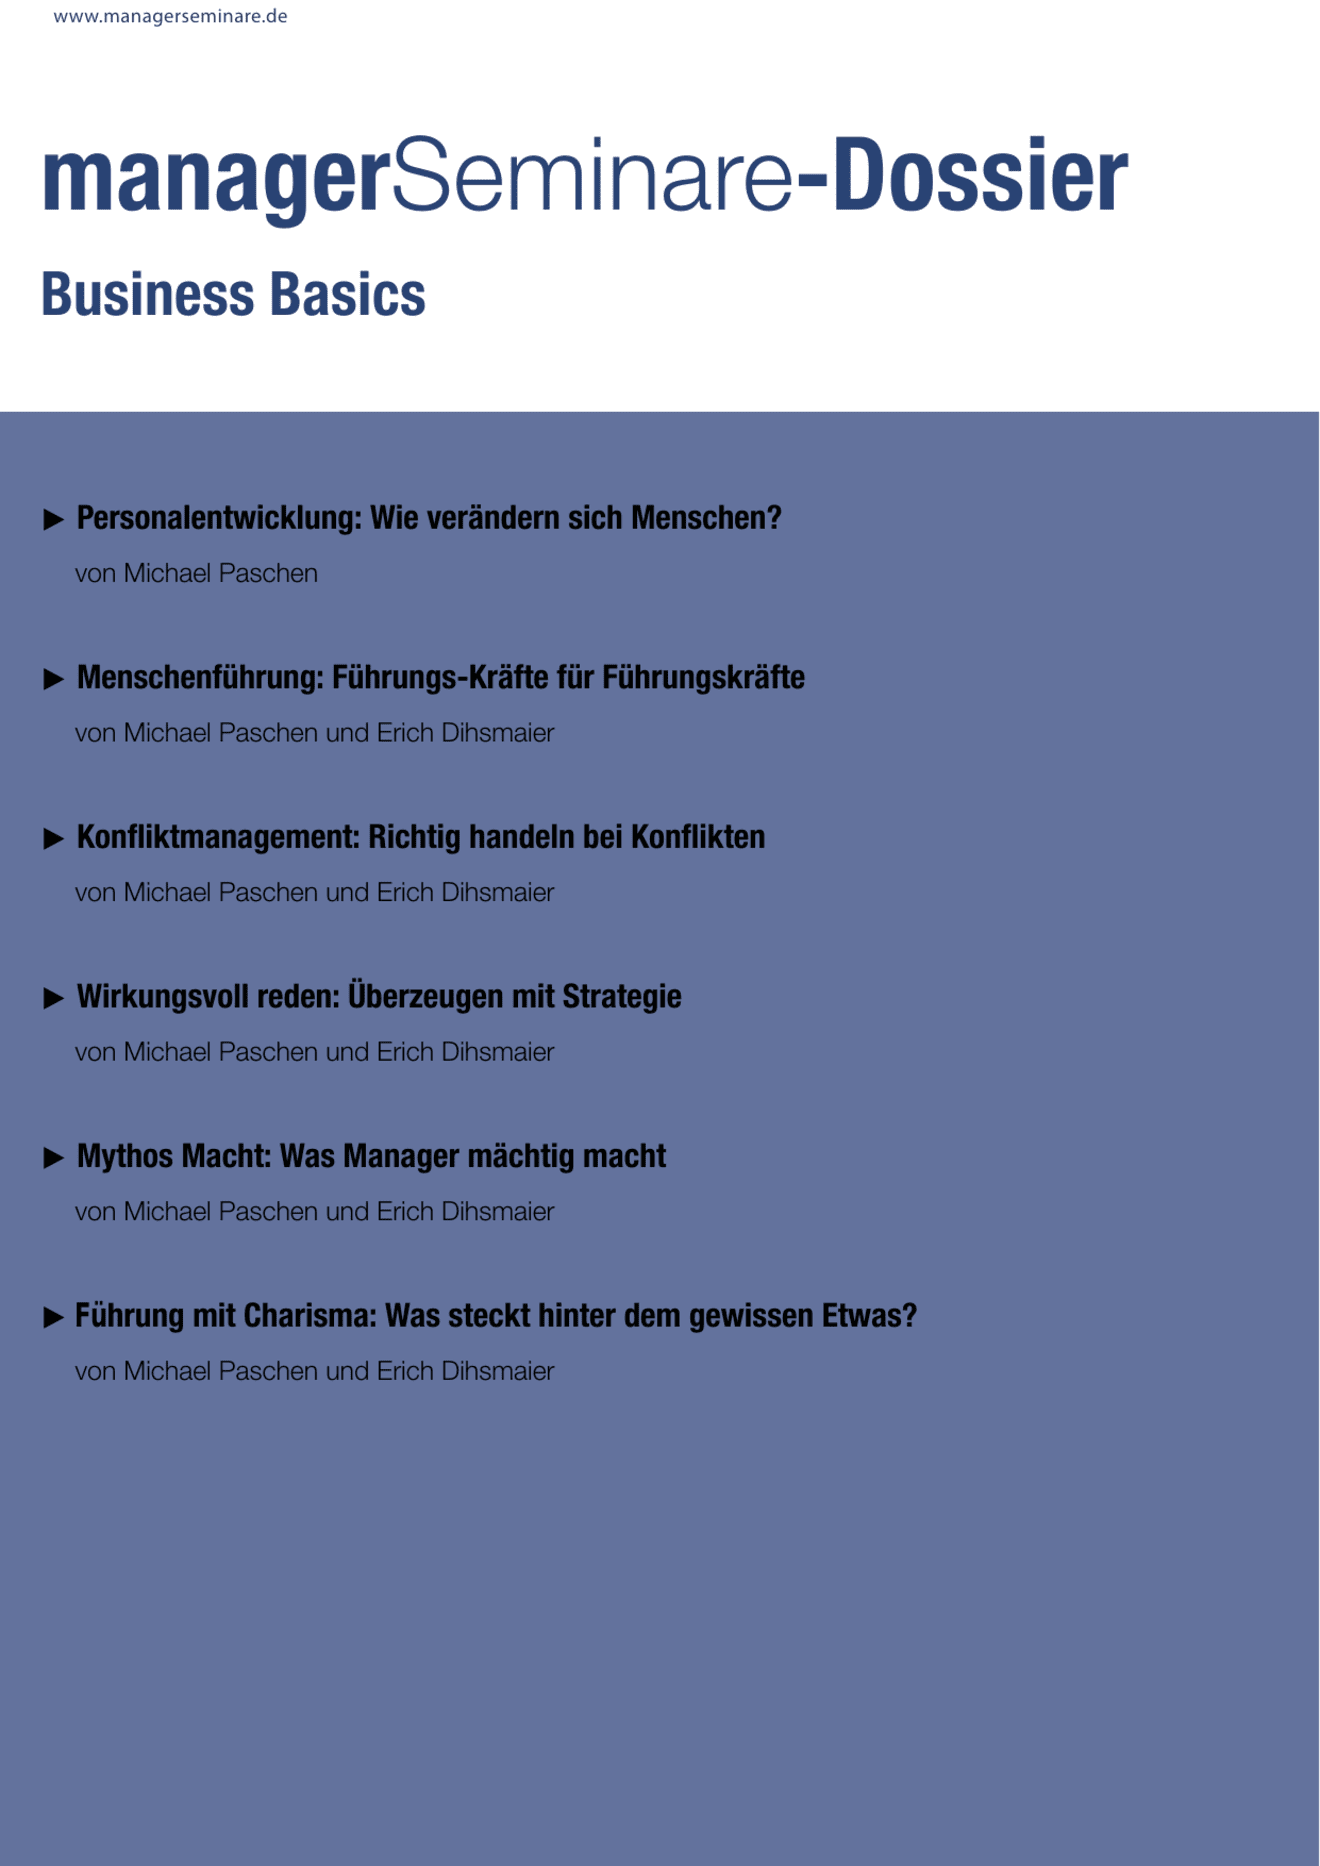 Dossier Business Basics